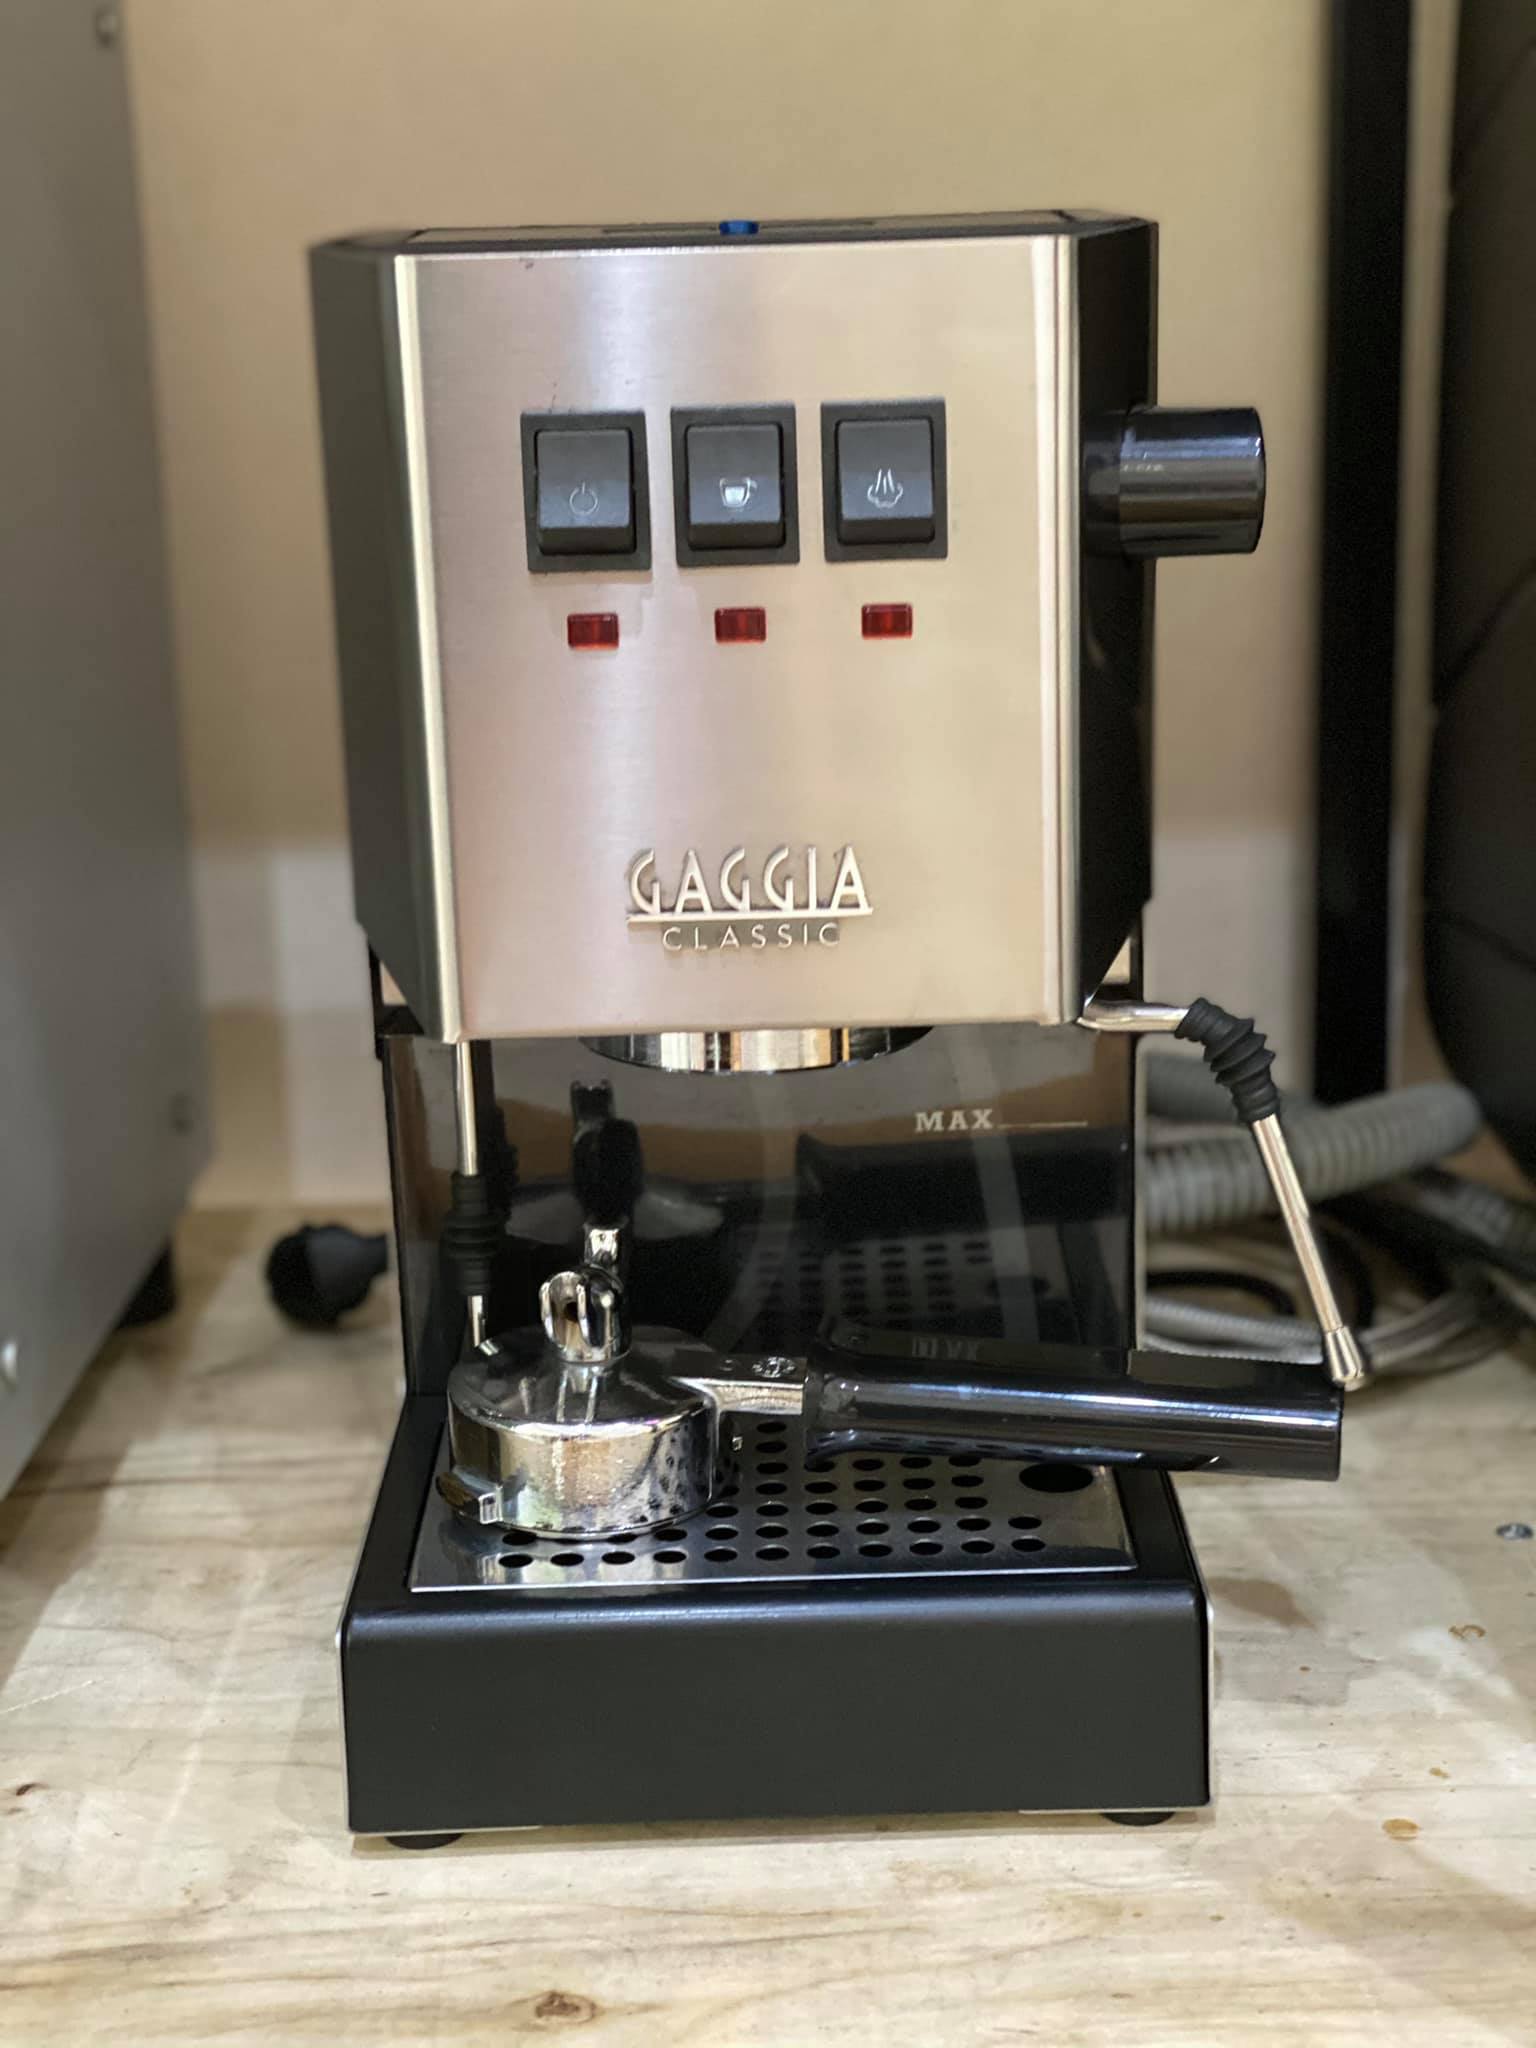 Gaggia Classic Pro can brew balanced espresso with rich crema